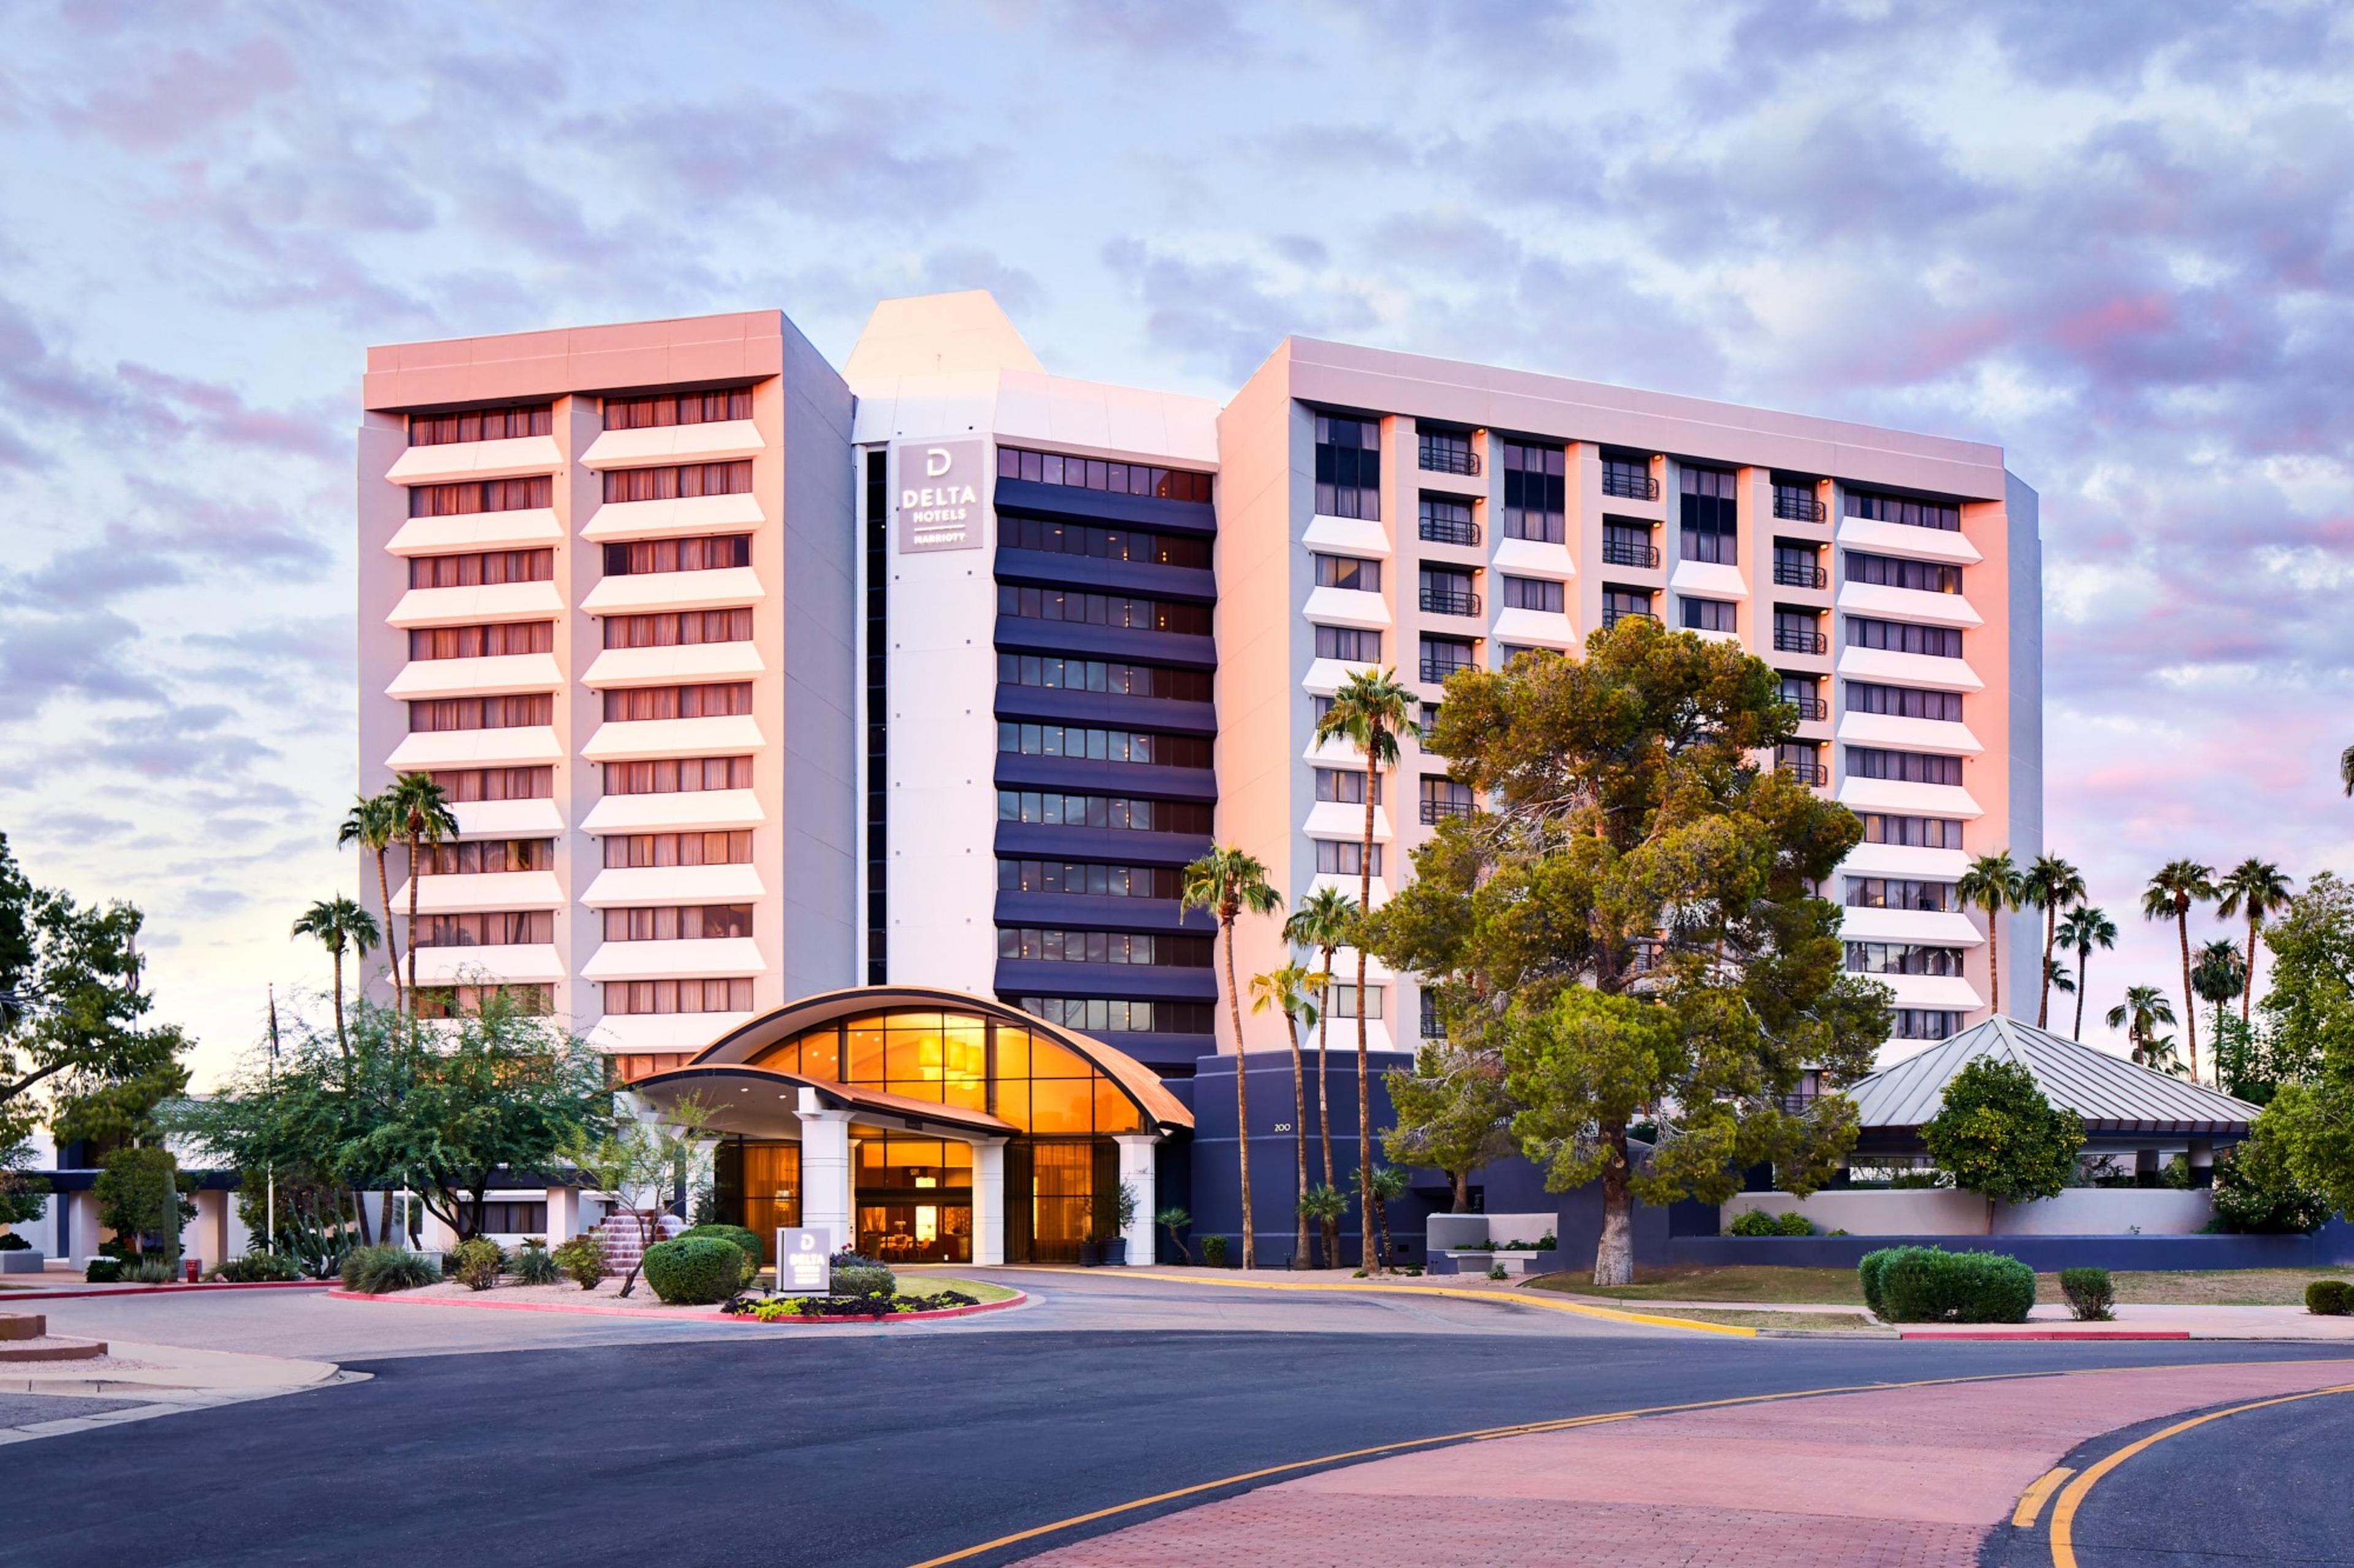 Delta Hotels Phoenix Mesa